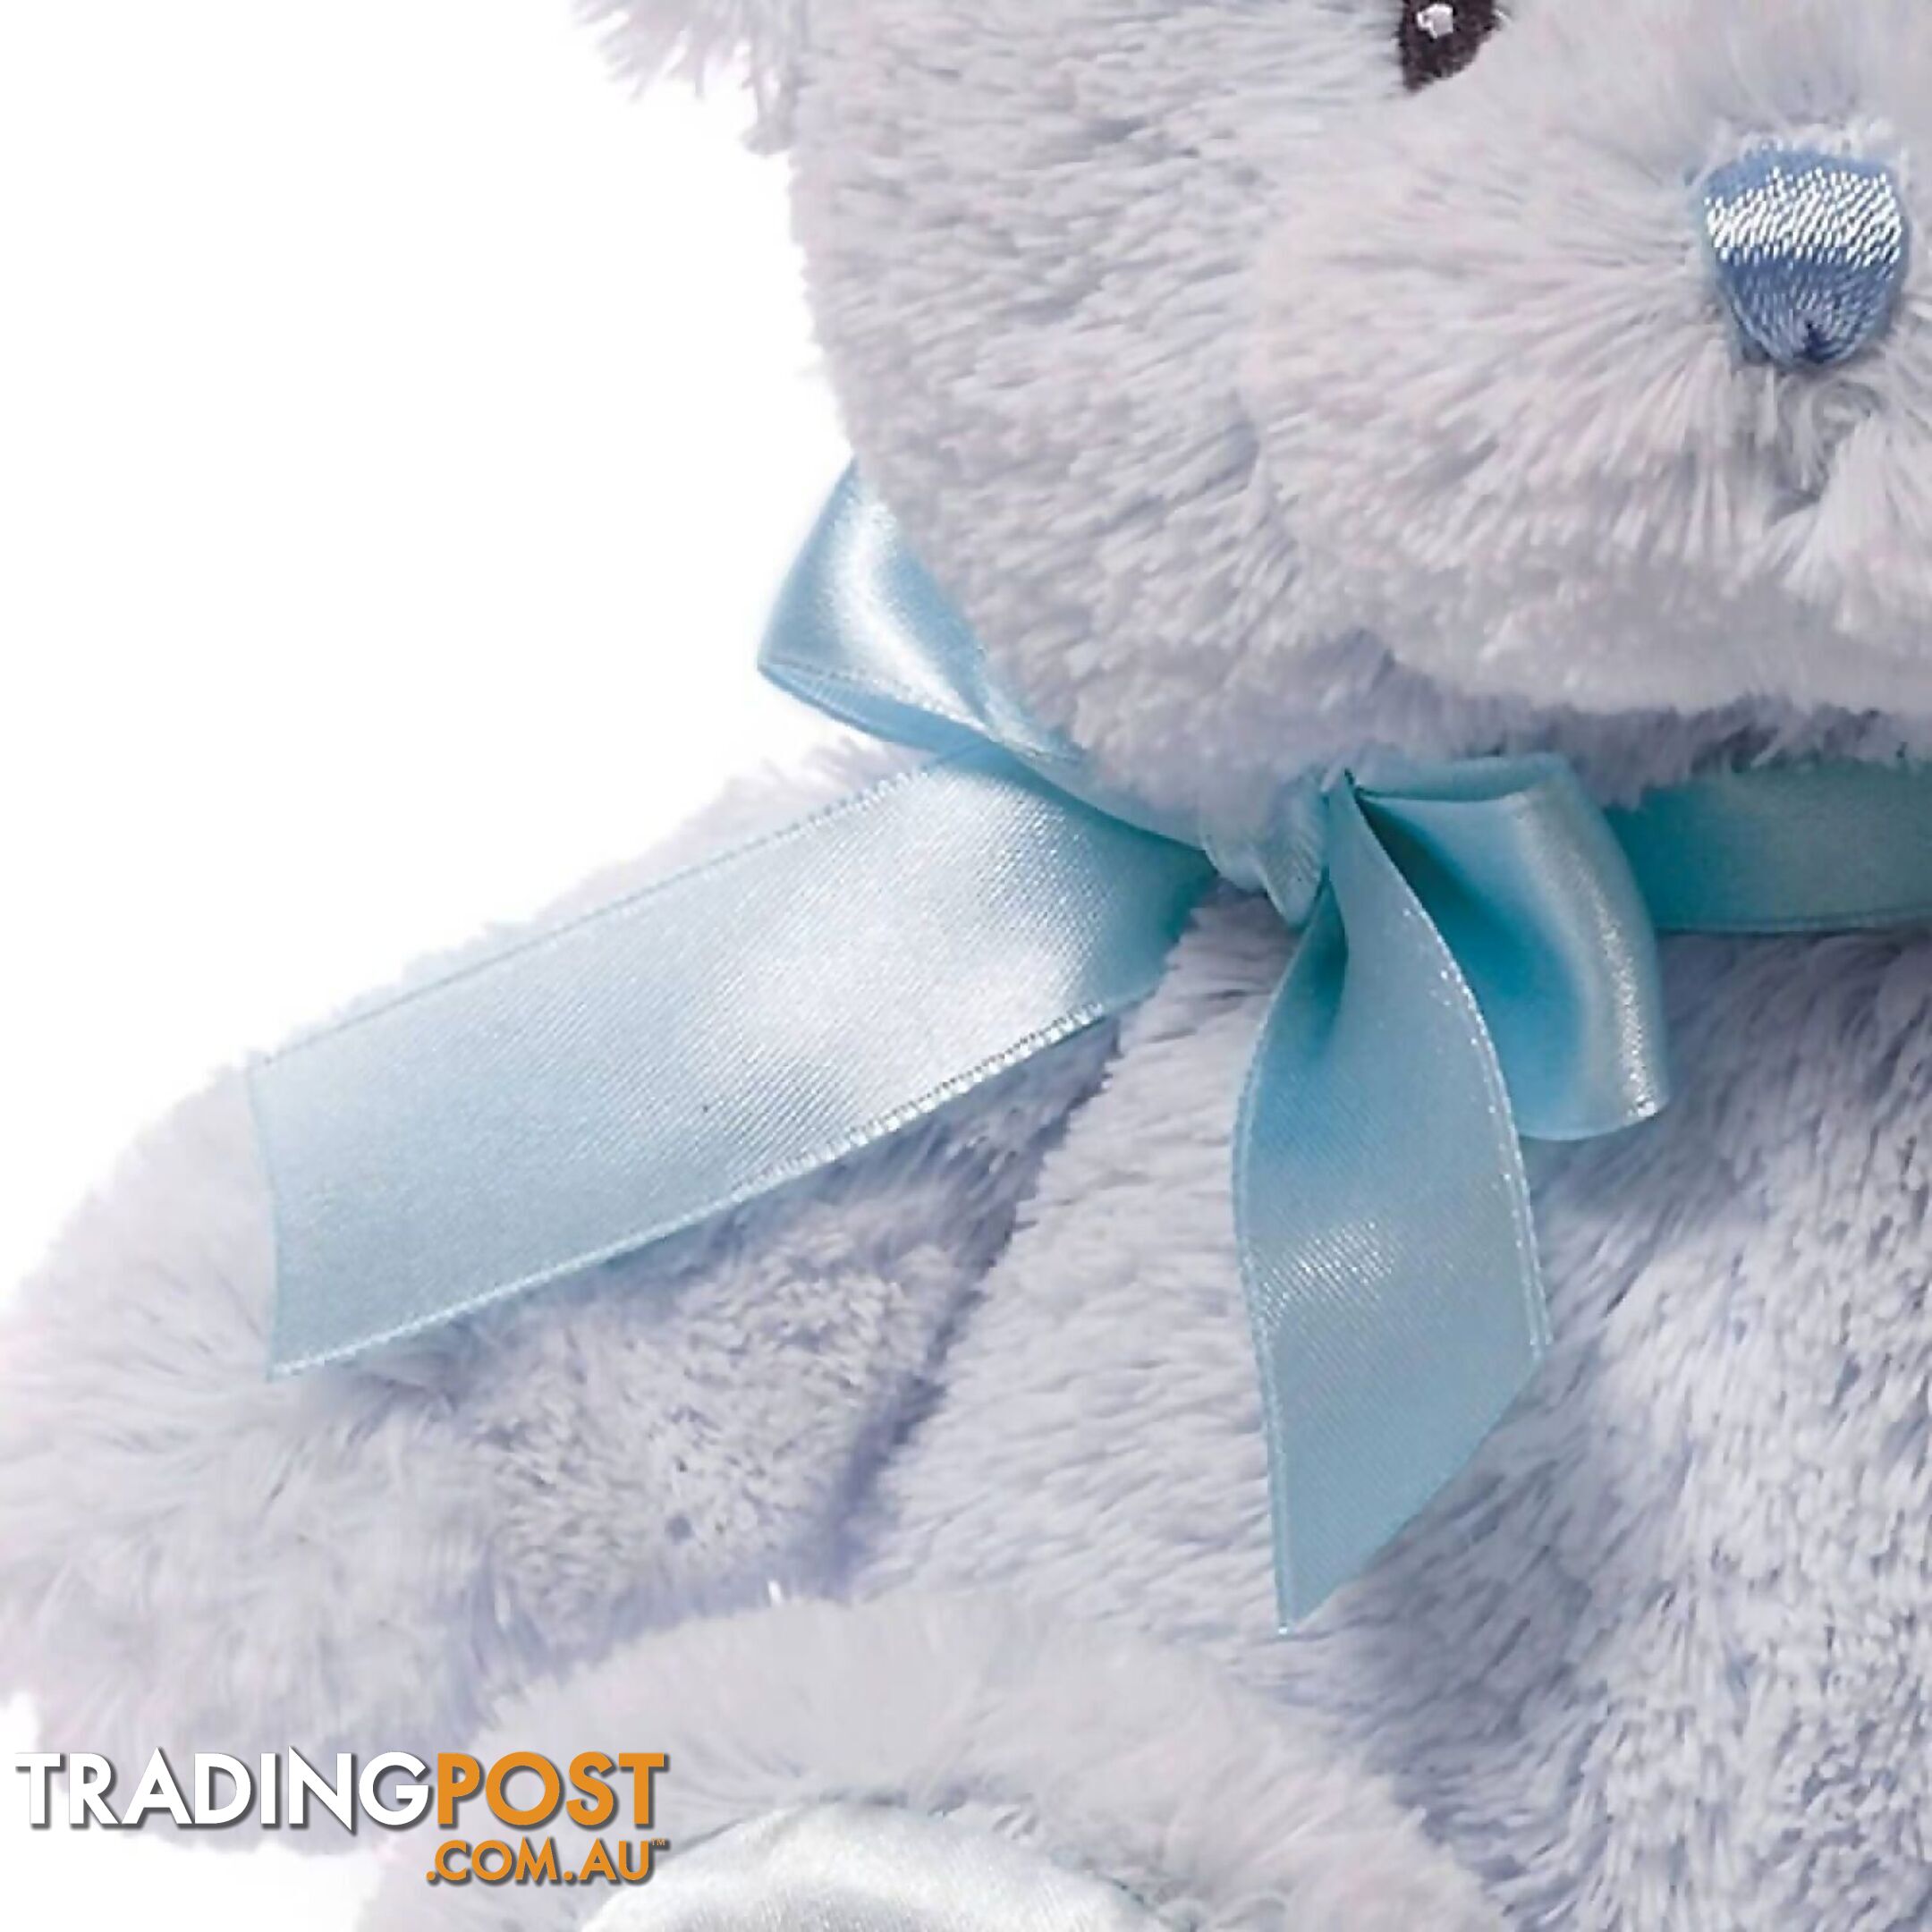 My First Teddy - Blue Plush Soft Toy Bear 25cm - Jsu4043950 - 028399065608